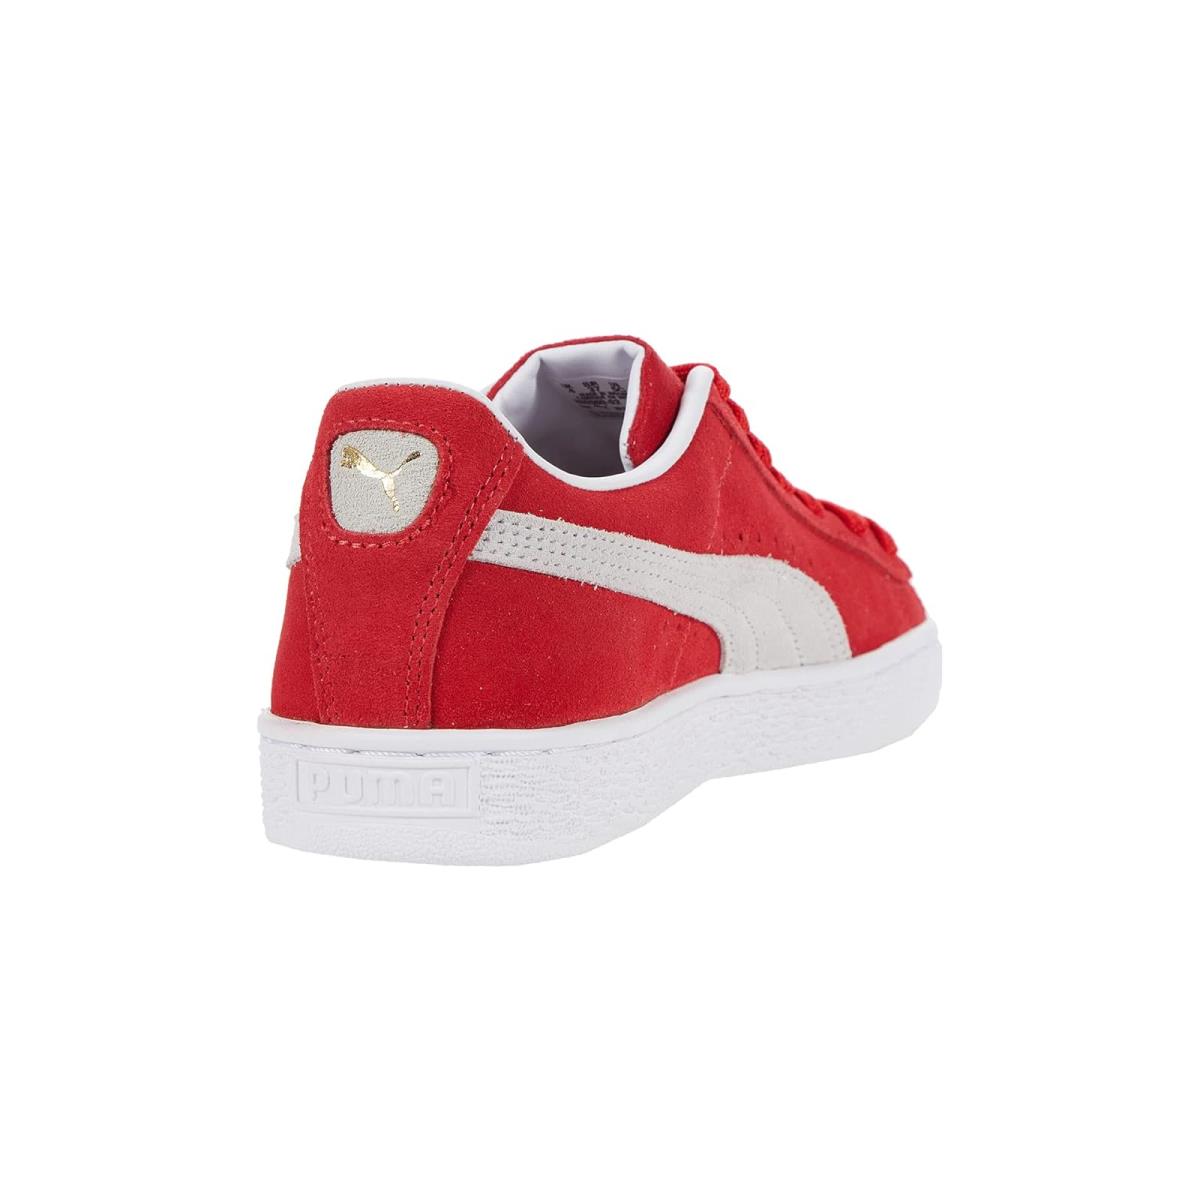 Puma shoes  - High-Risk Red/Puma White 3